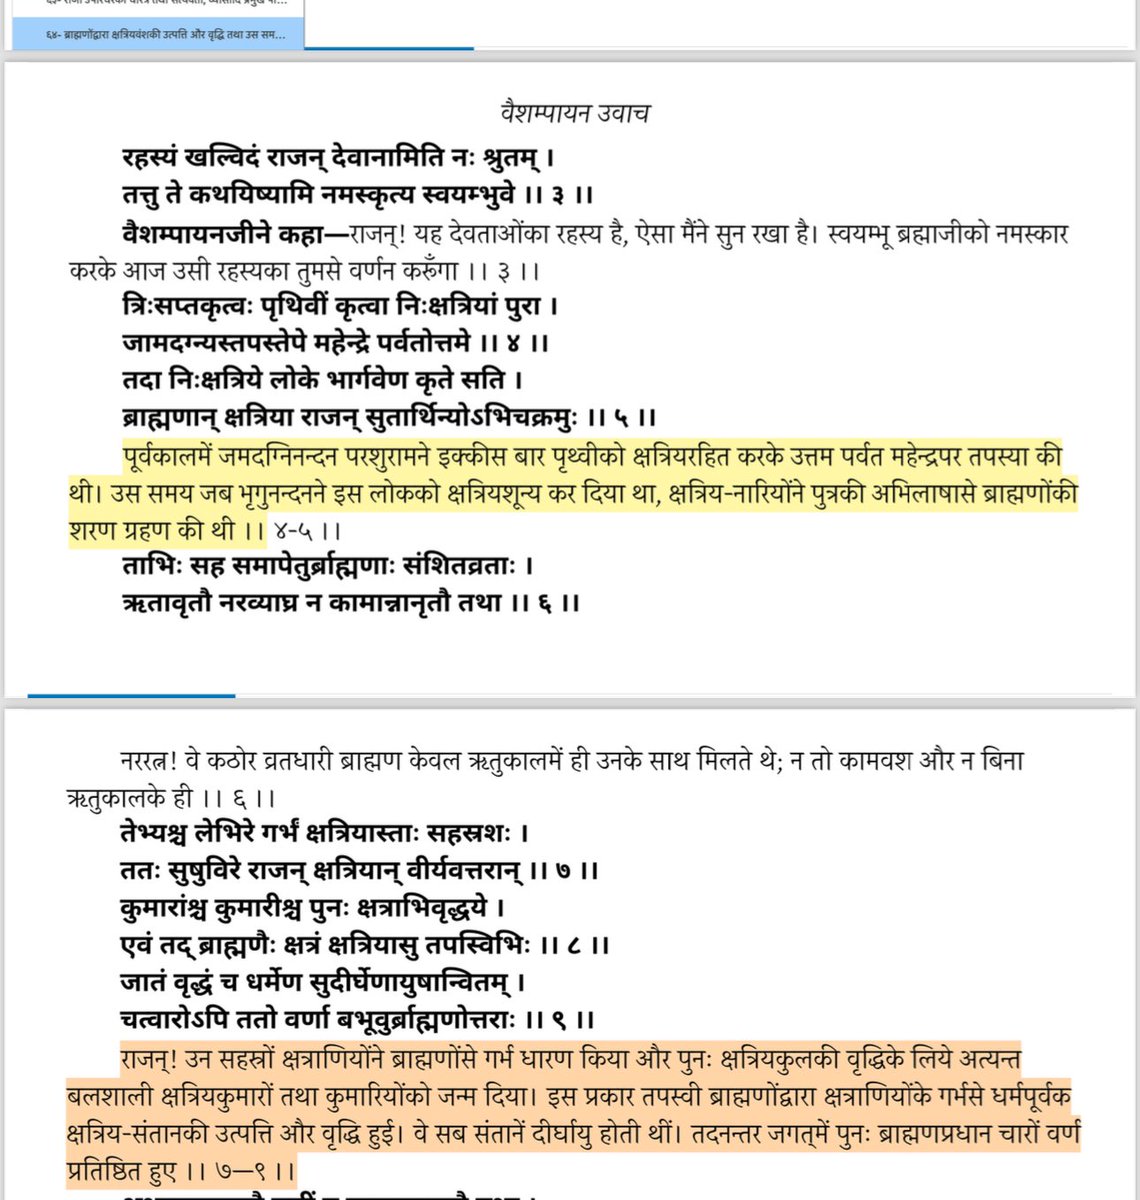 ASI बता रहा है #परशुराम का कोई पुरातत्व सबूत आजतक नहीं मिला है।
सवाल है महाभारत आदिपर्व चैप्टर 64 के अनुसार 21 बार धरती को क्षत्रियशून्य करने वाला #Parshuramkalpnik है?
RTI रिपोर्ट और महाभारत आदिपर्व श्लोक (गीता प्रेस गोरखपुर) संलग्न है